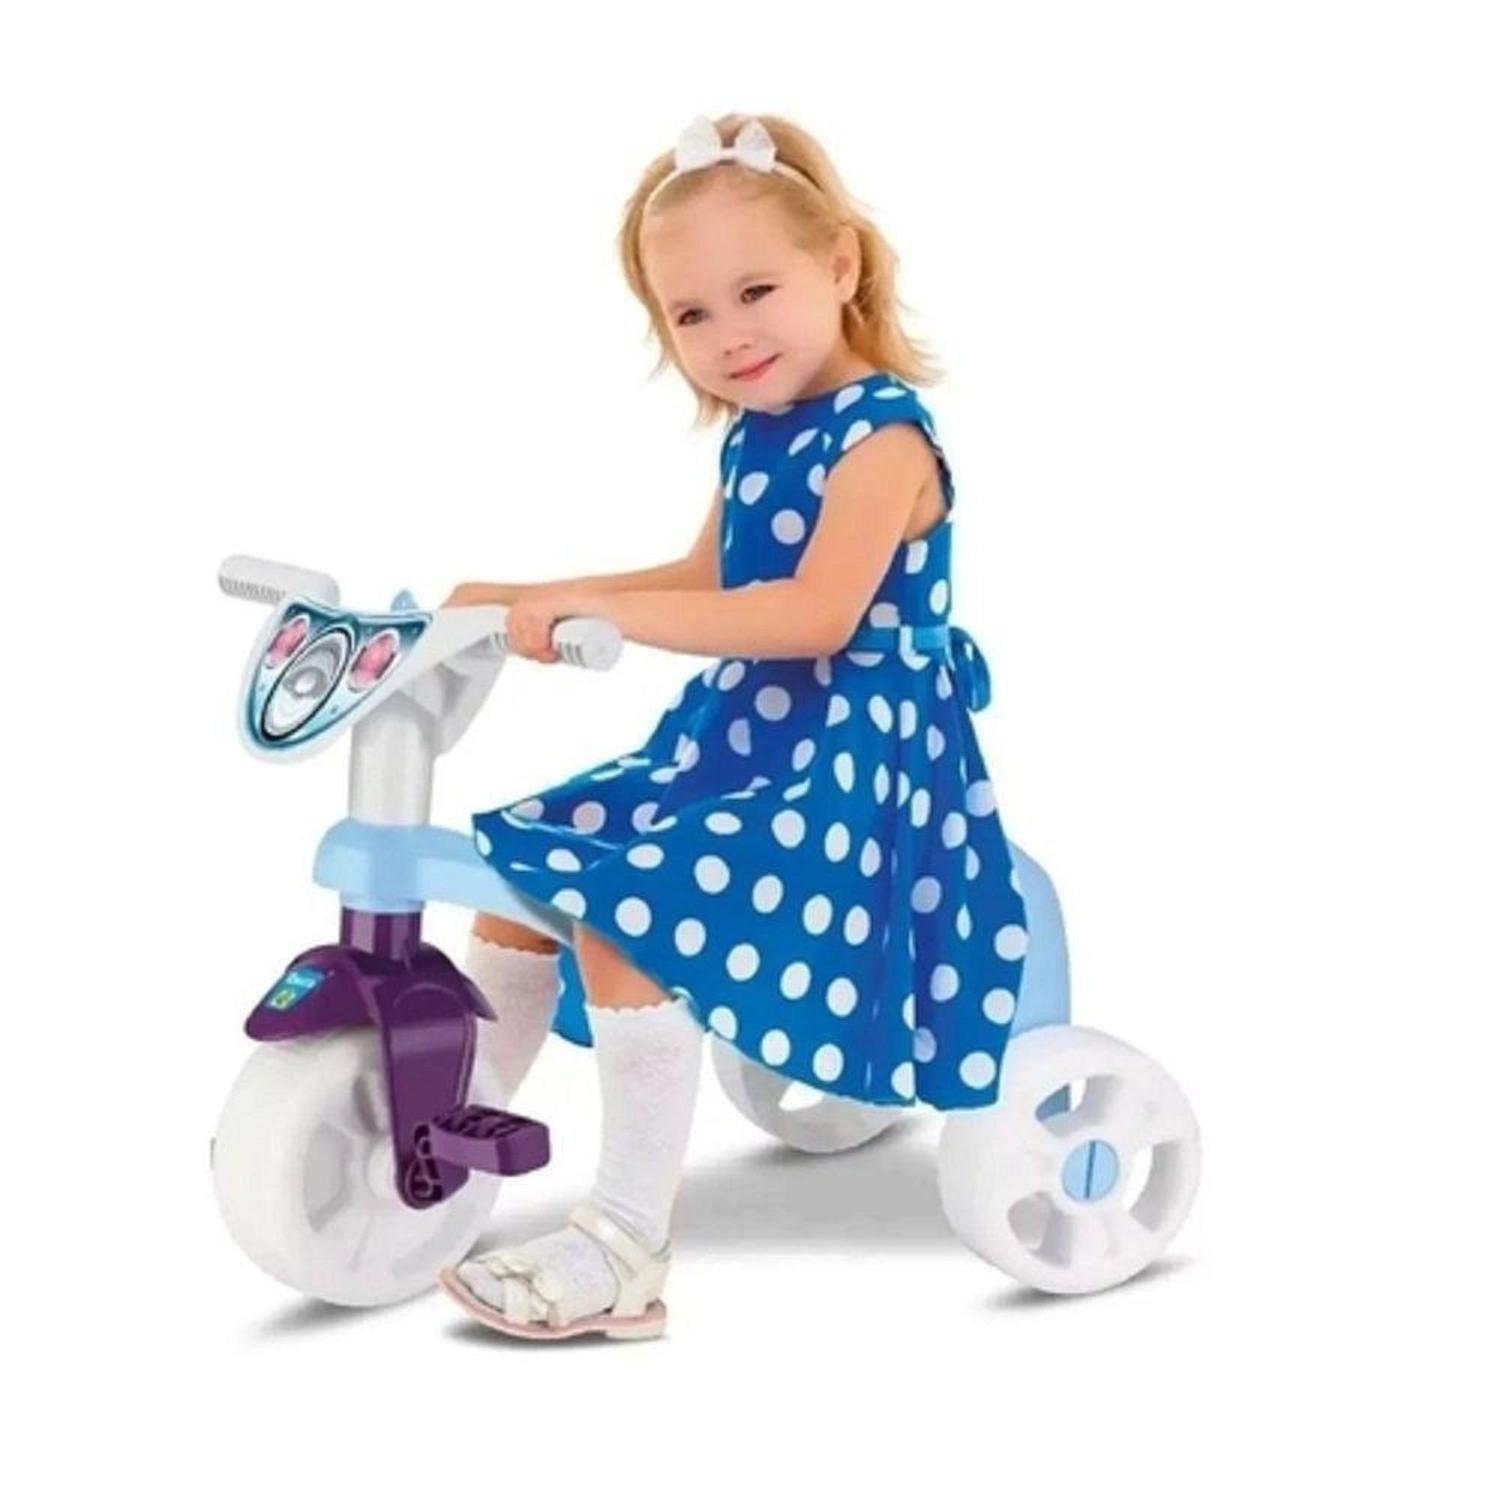 Triciclo Passeio Motoca Velotrol Infantil Meninas e Meninos